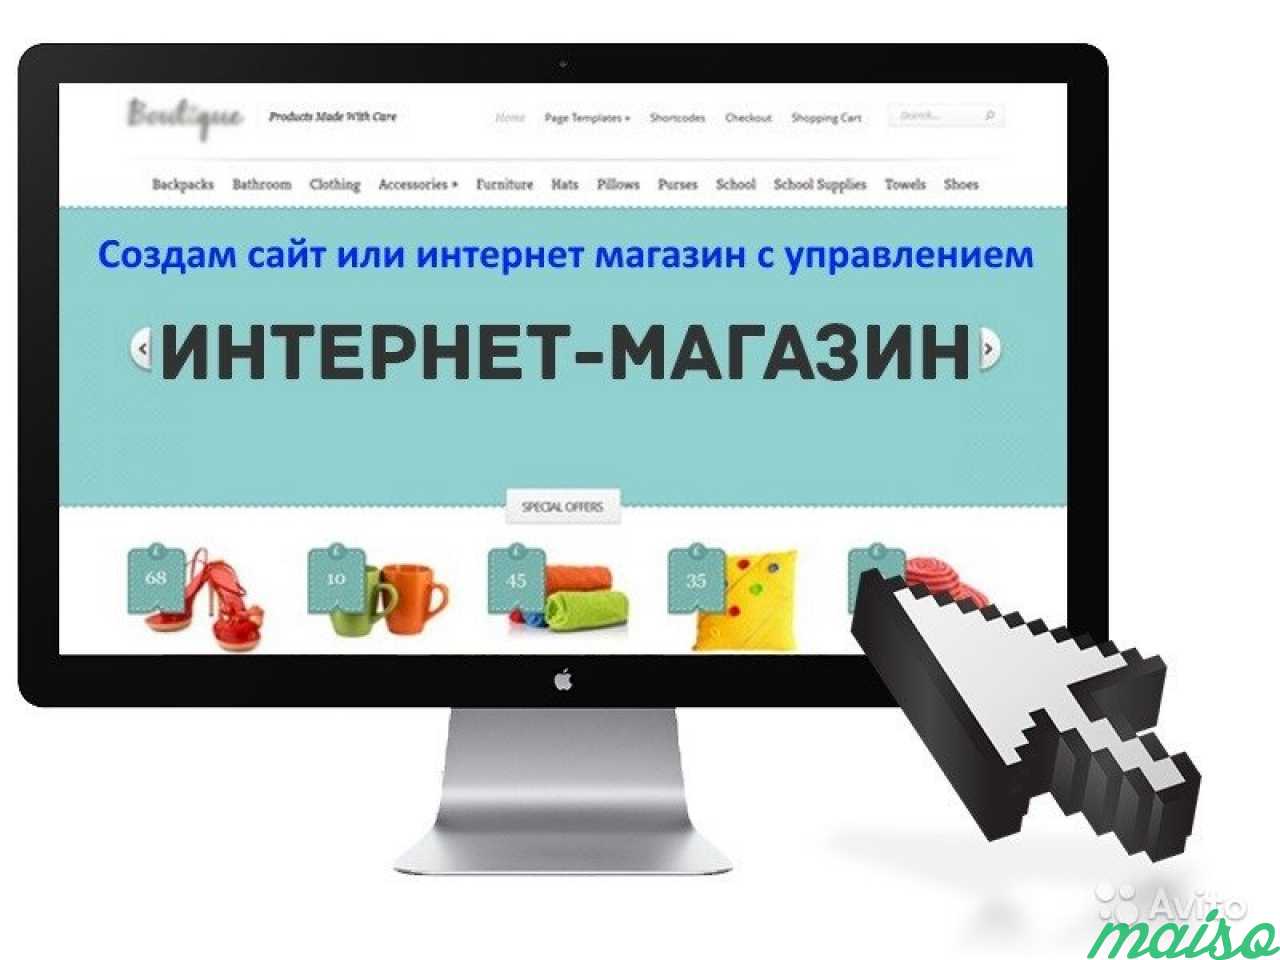 Создам сайт или интернет магазин с управлением в Санкт-Петербурге. Фото 1